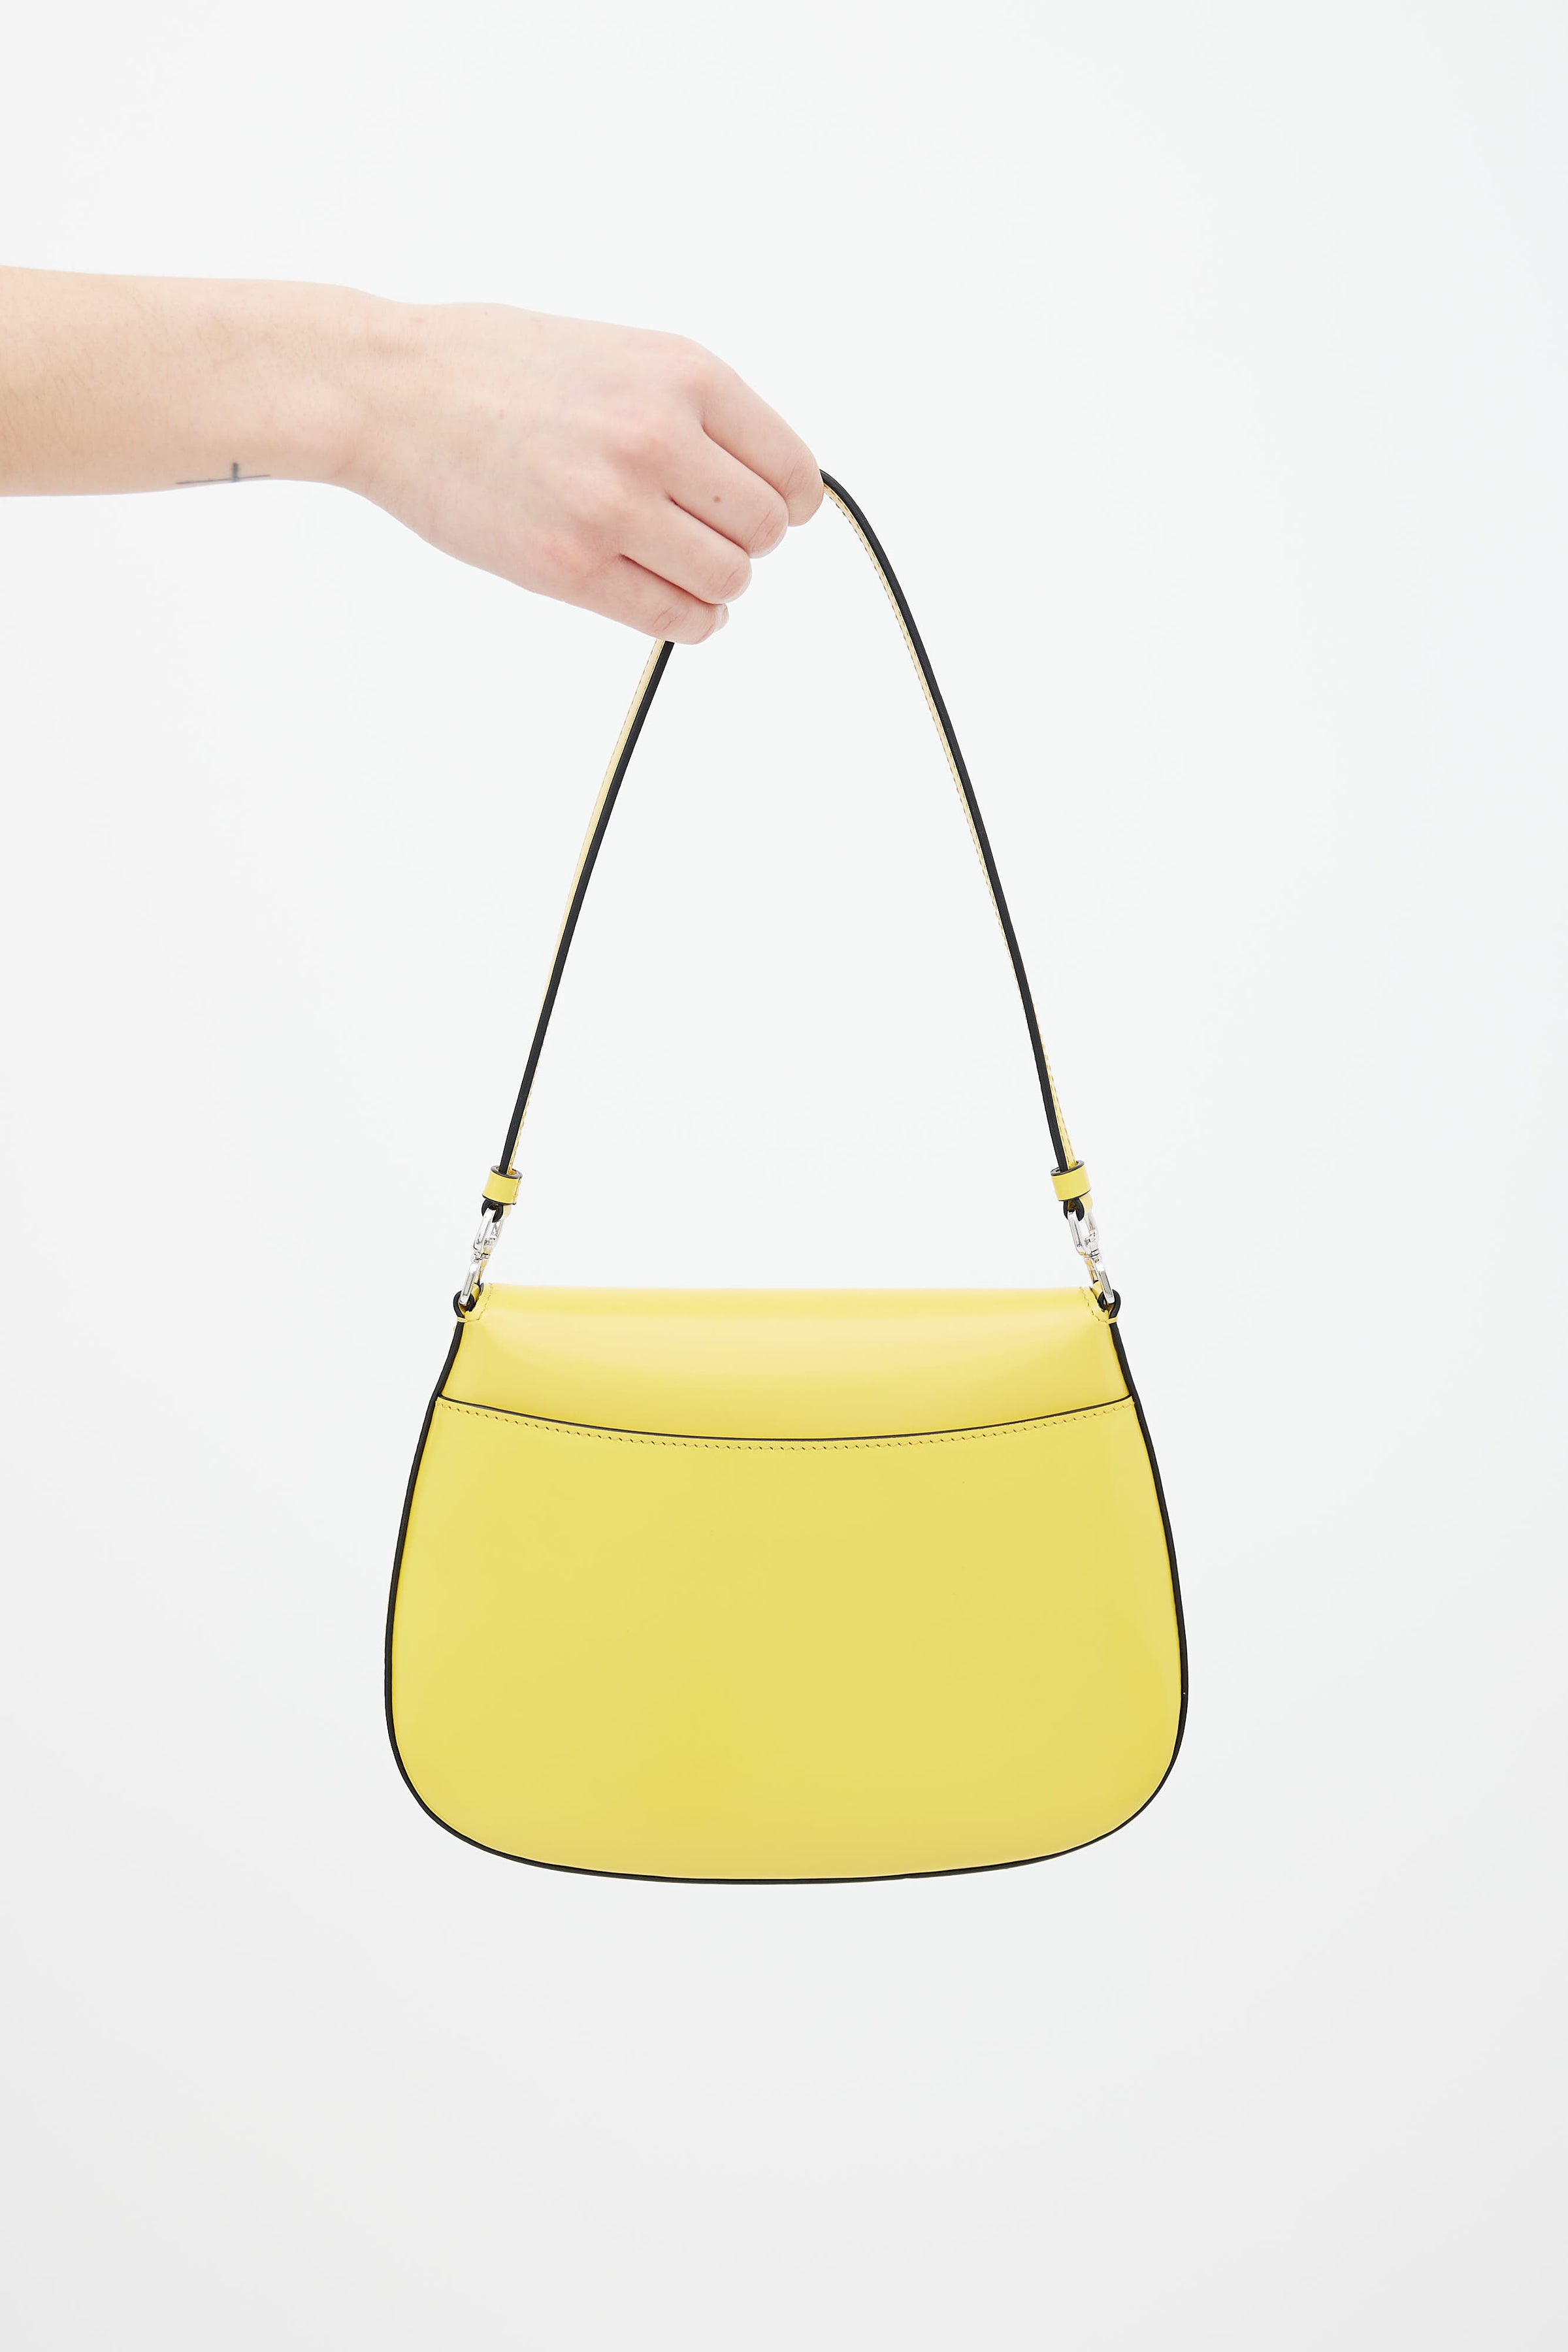 Prada Authenticated Cleo Handbag